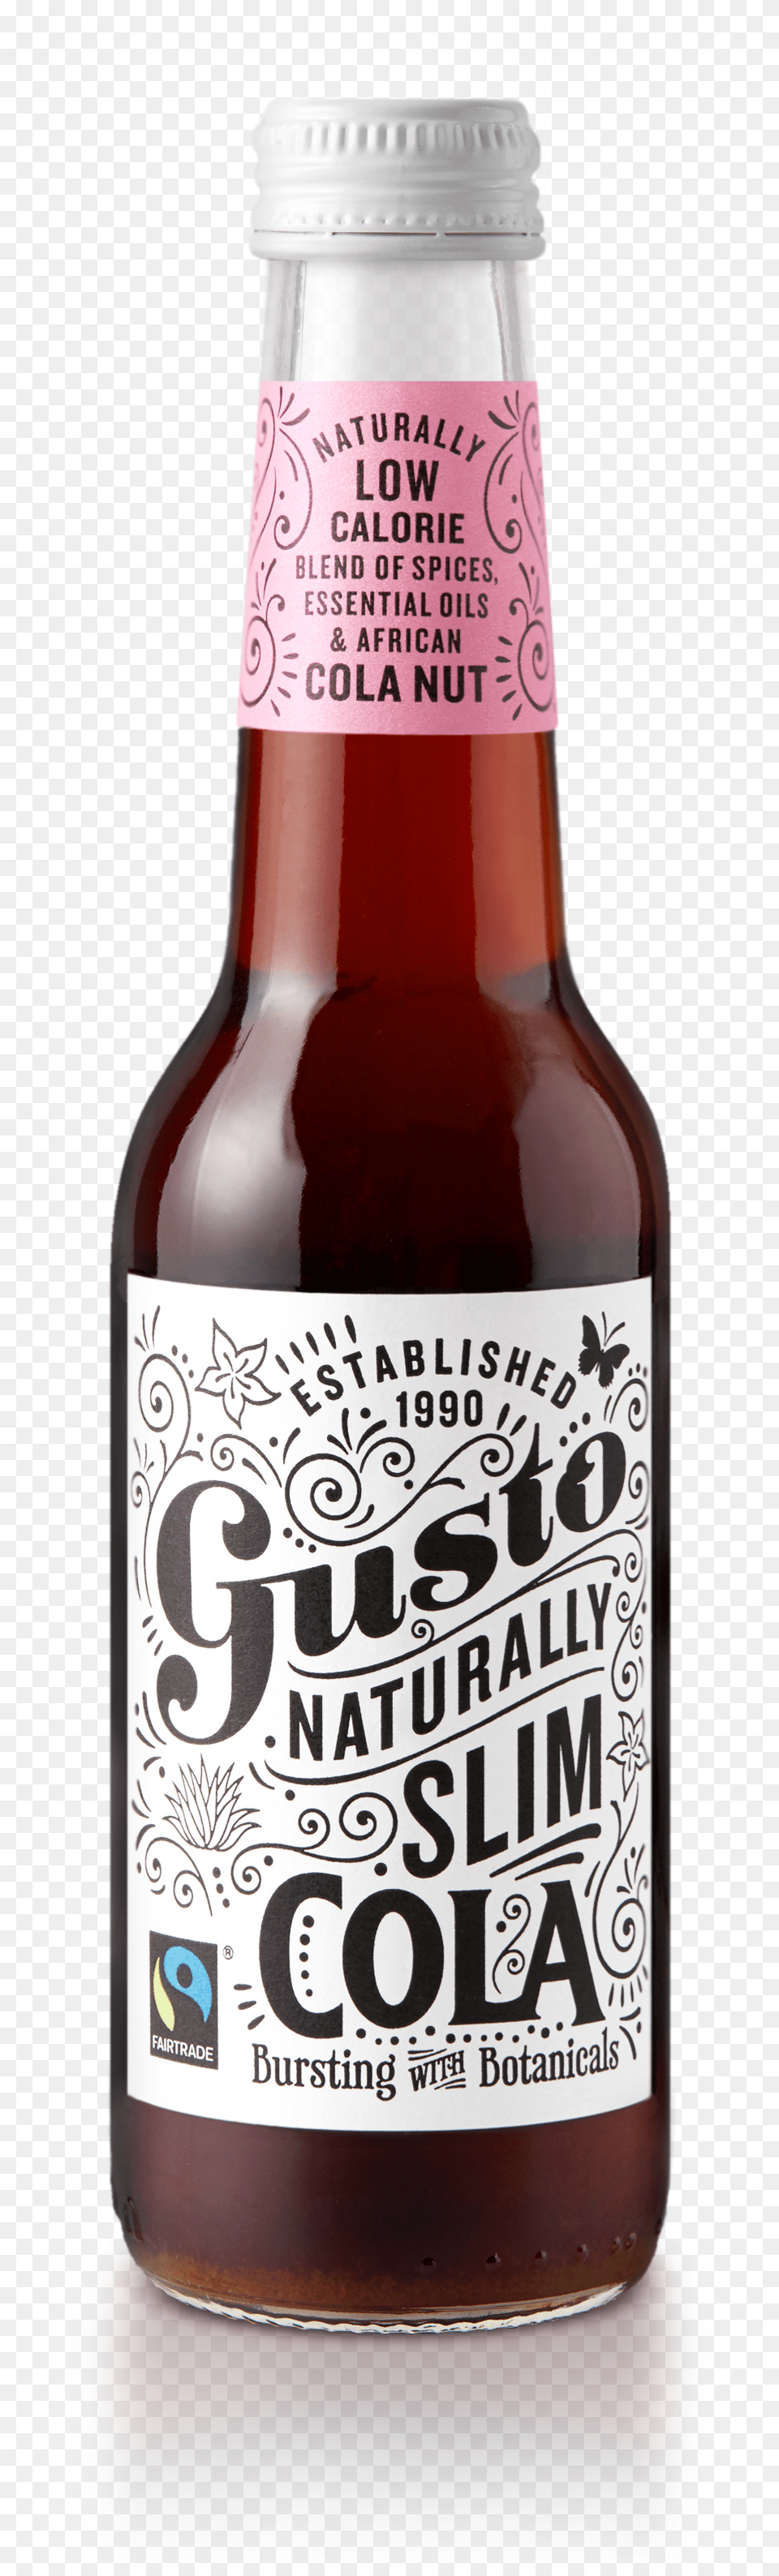 Gusto Cola, Alcohol, Beer, Beverage, Bottle Free Transparent Png